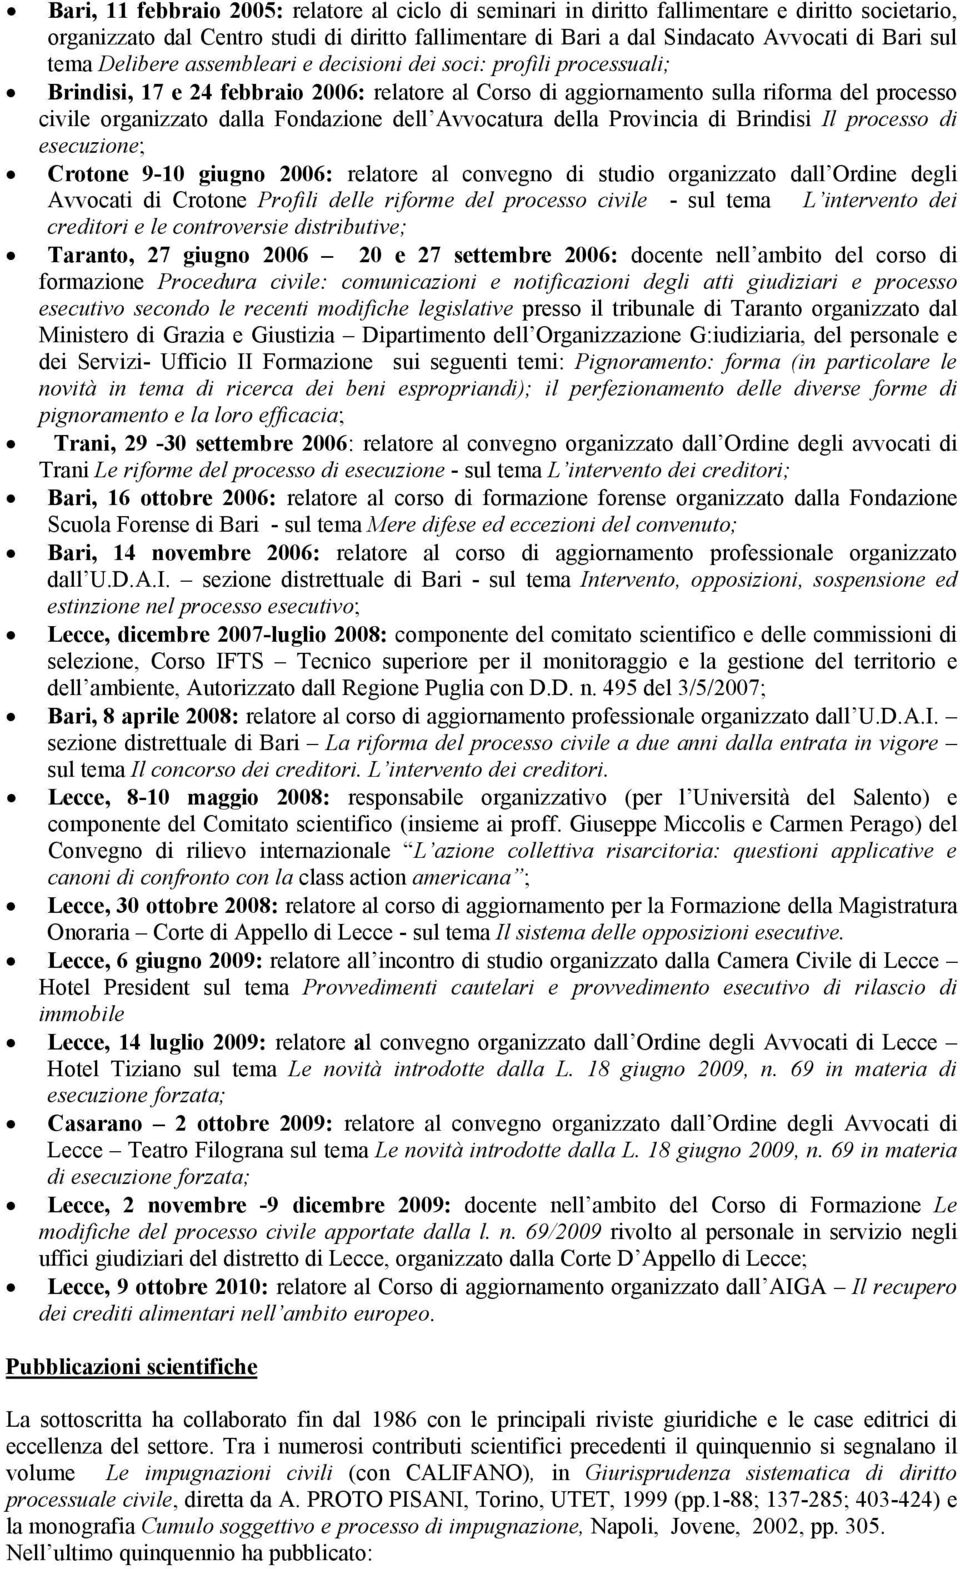 dell Avvocatura della Provincia di Brindisi Il processo di esecuzione; Crotone 9-10 giugno 2006: relatore al convegno di studio organizzato dall Ordine degli Avvocati di Crotone Profili delle riforme